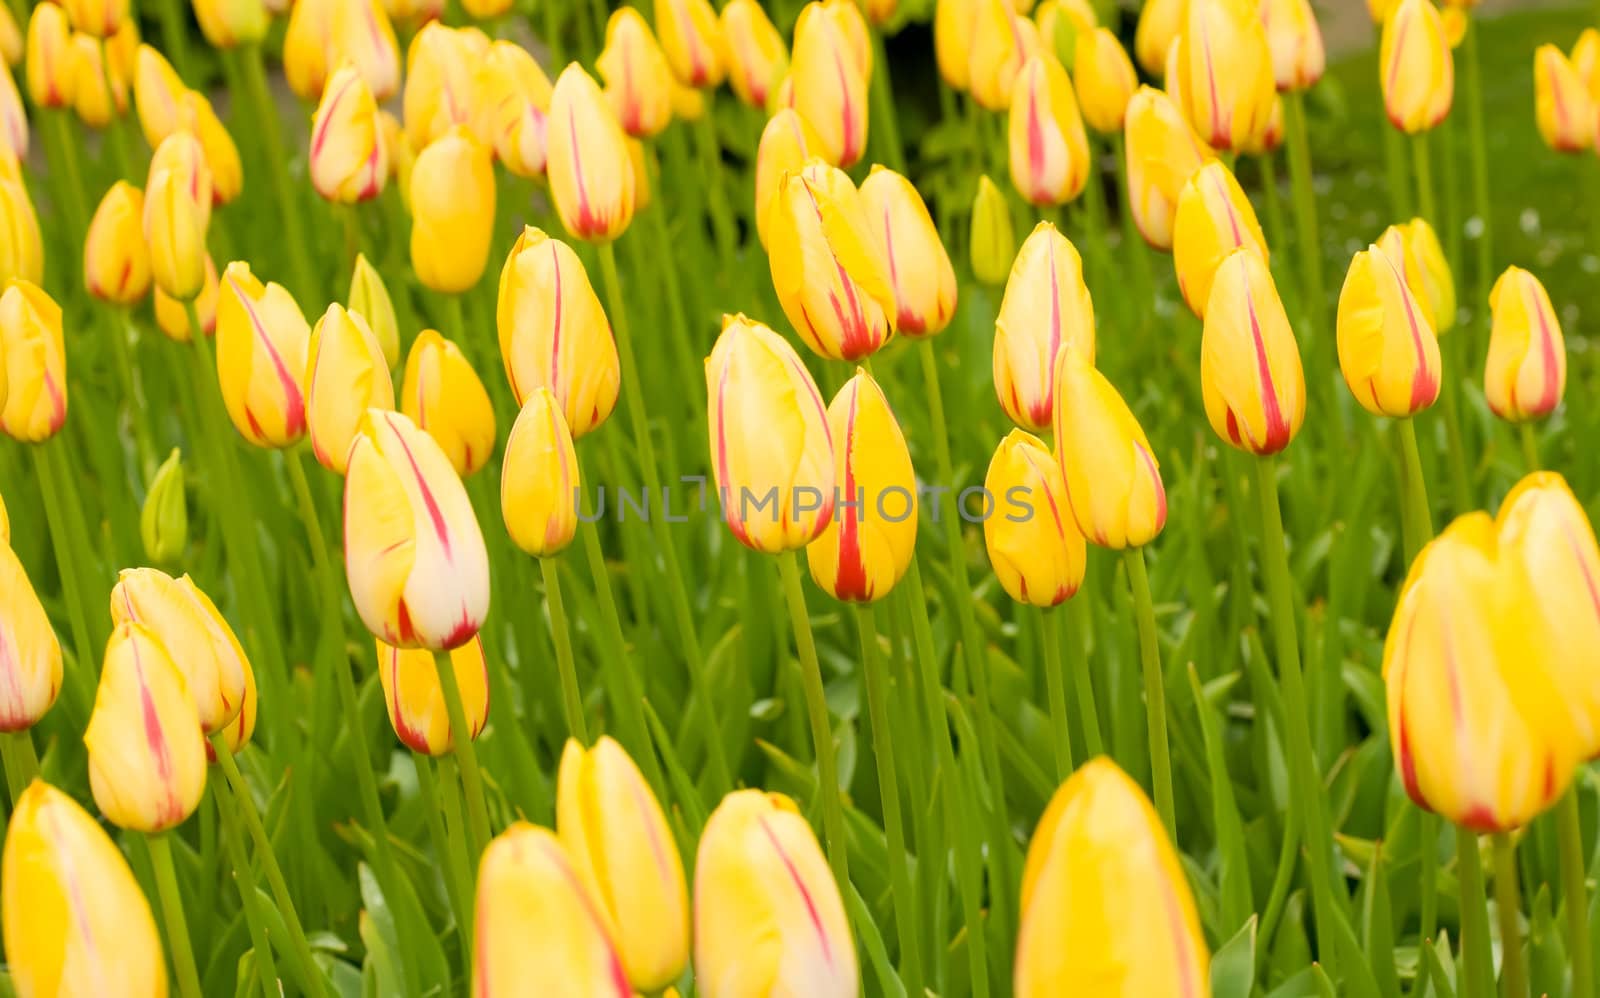 Dutch yellow tulips in Keukenhof park by Arsgera